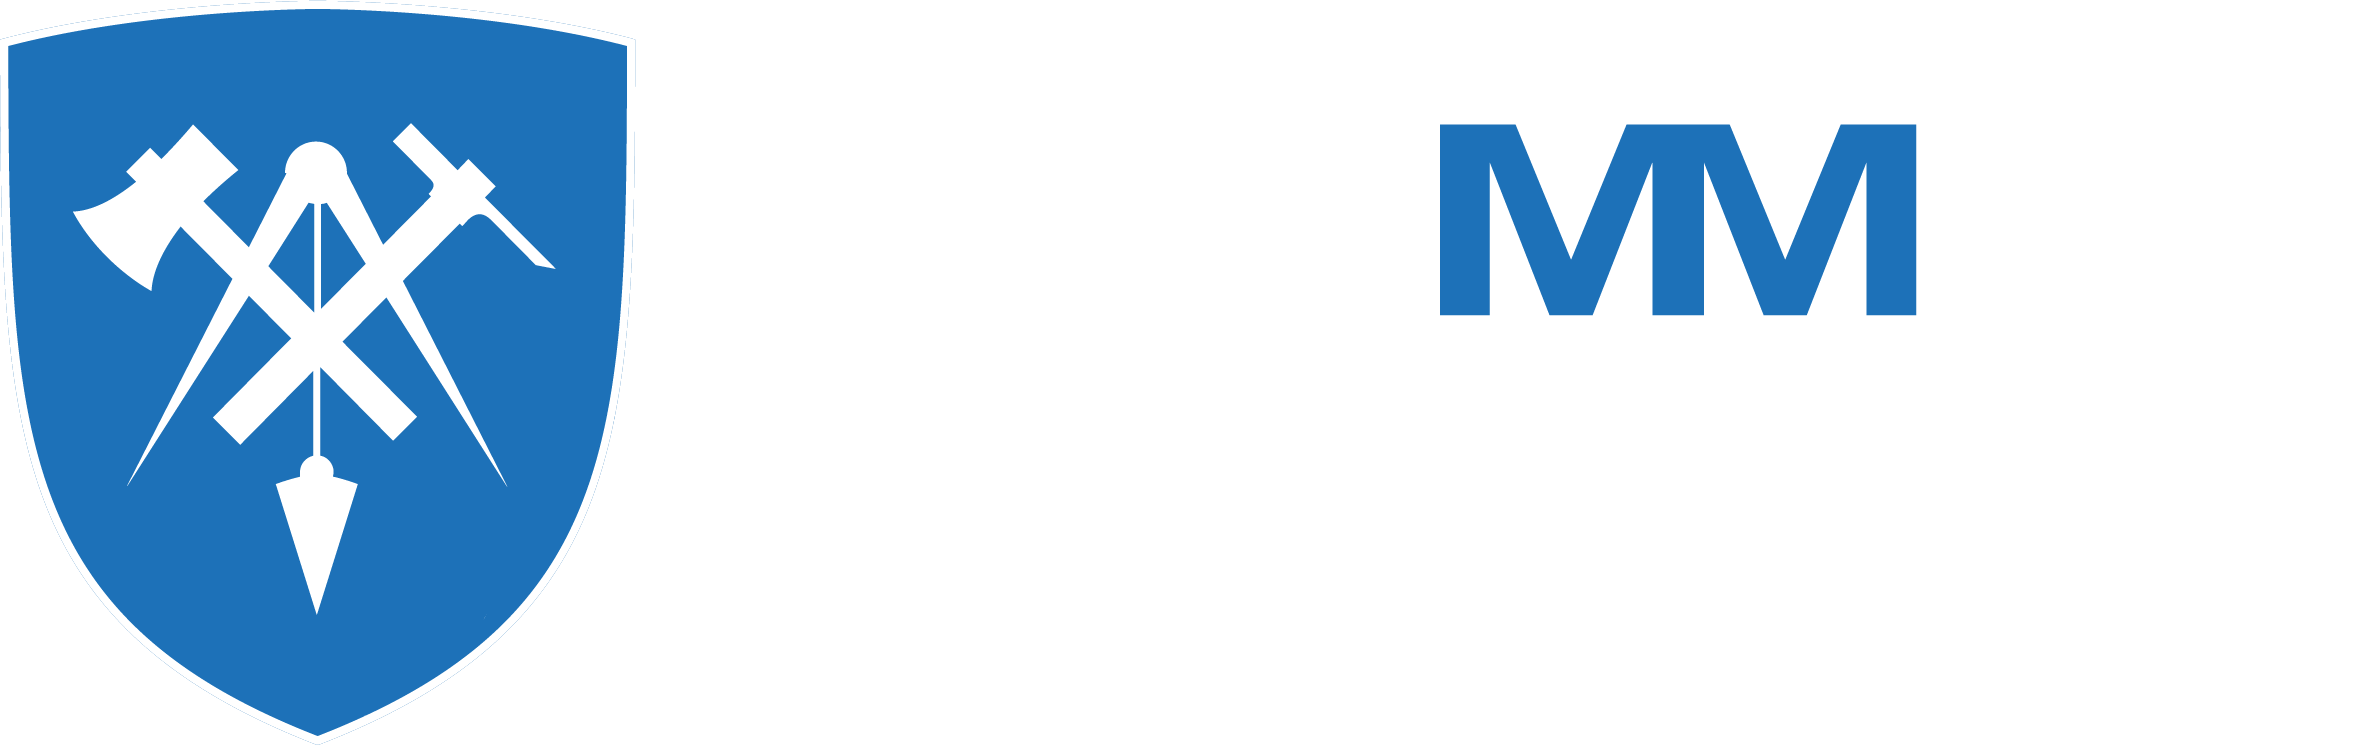 Stemmer Bau GmbH